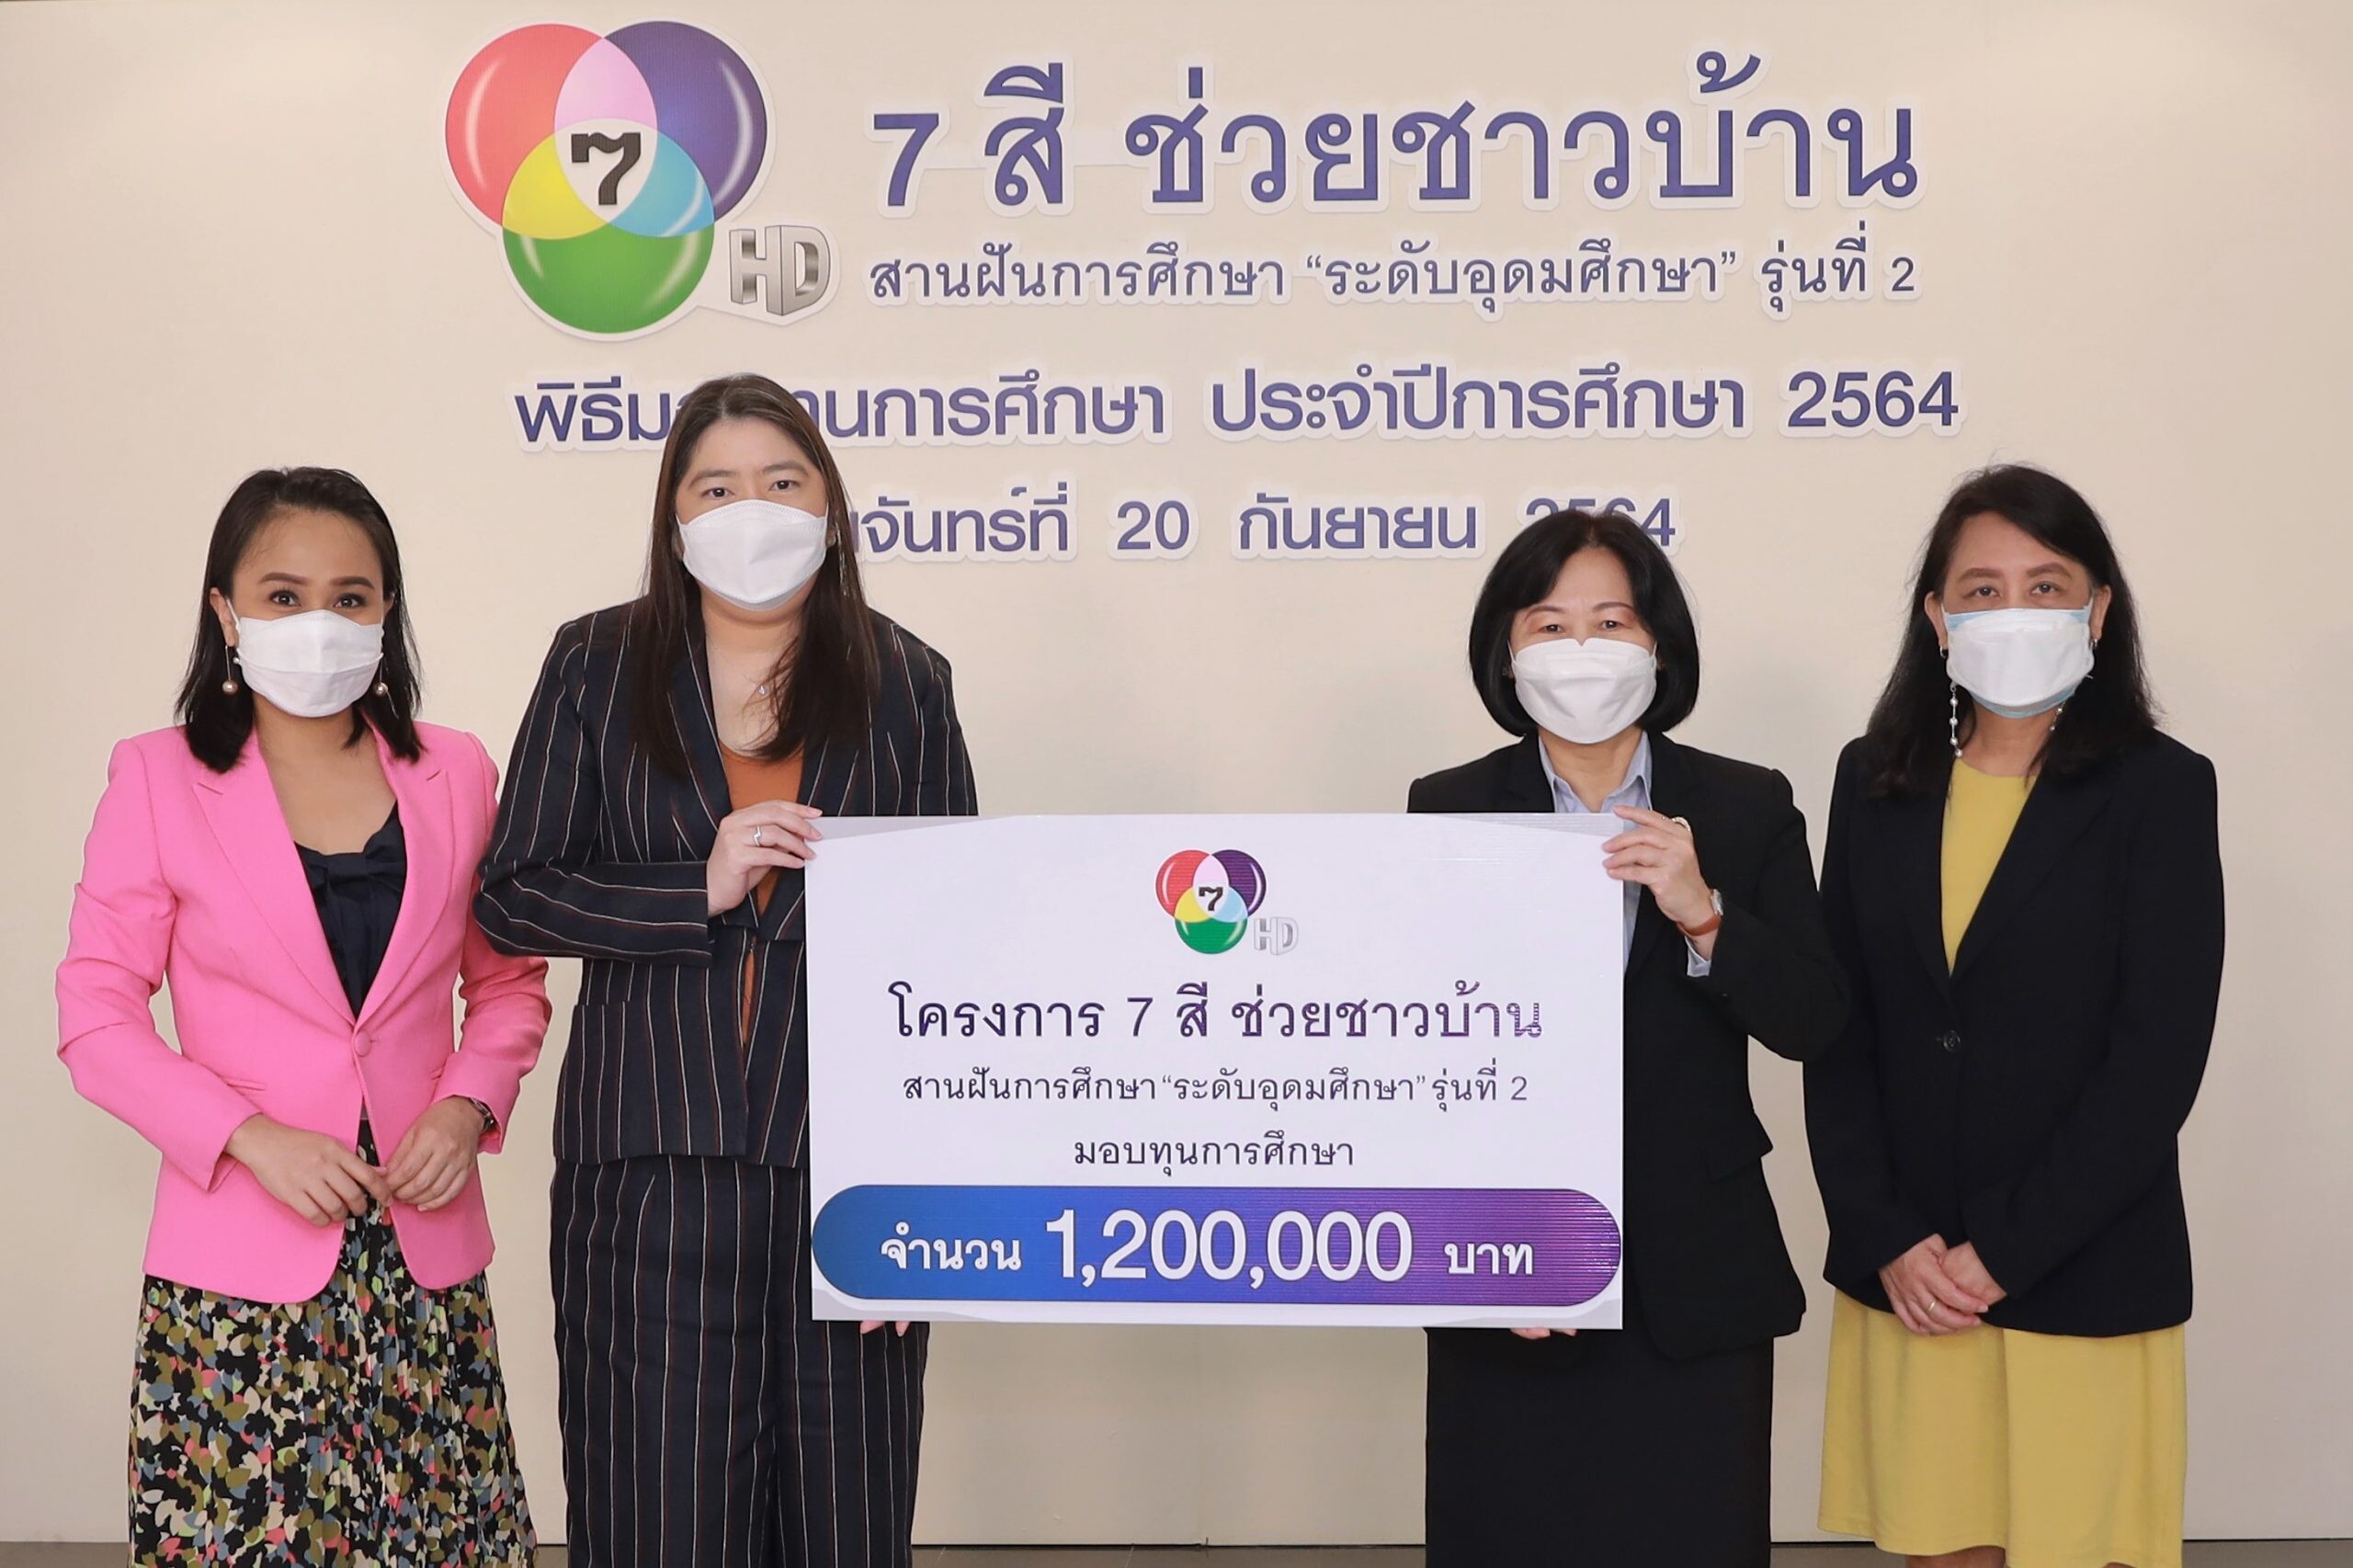 โครงการ "7 สี ช่วยชาวบ้าน สานฝันการศึกษา" มอบทุนระดับอุดมศึกษา ส่งต่ออนาคตทางการศึกษาให้เยาวชนไทย